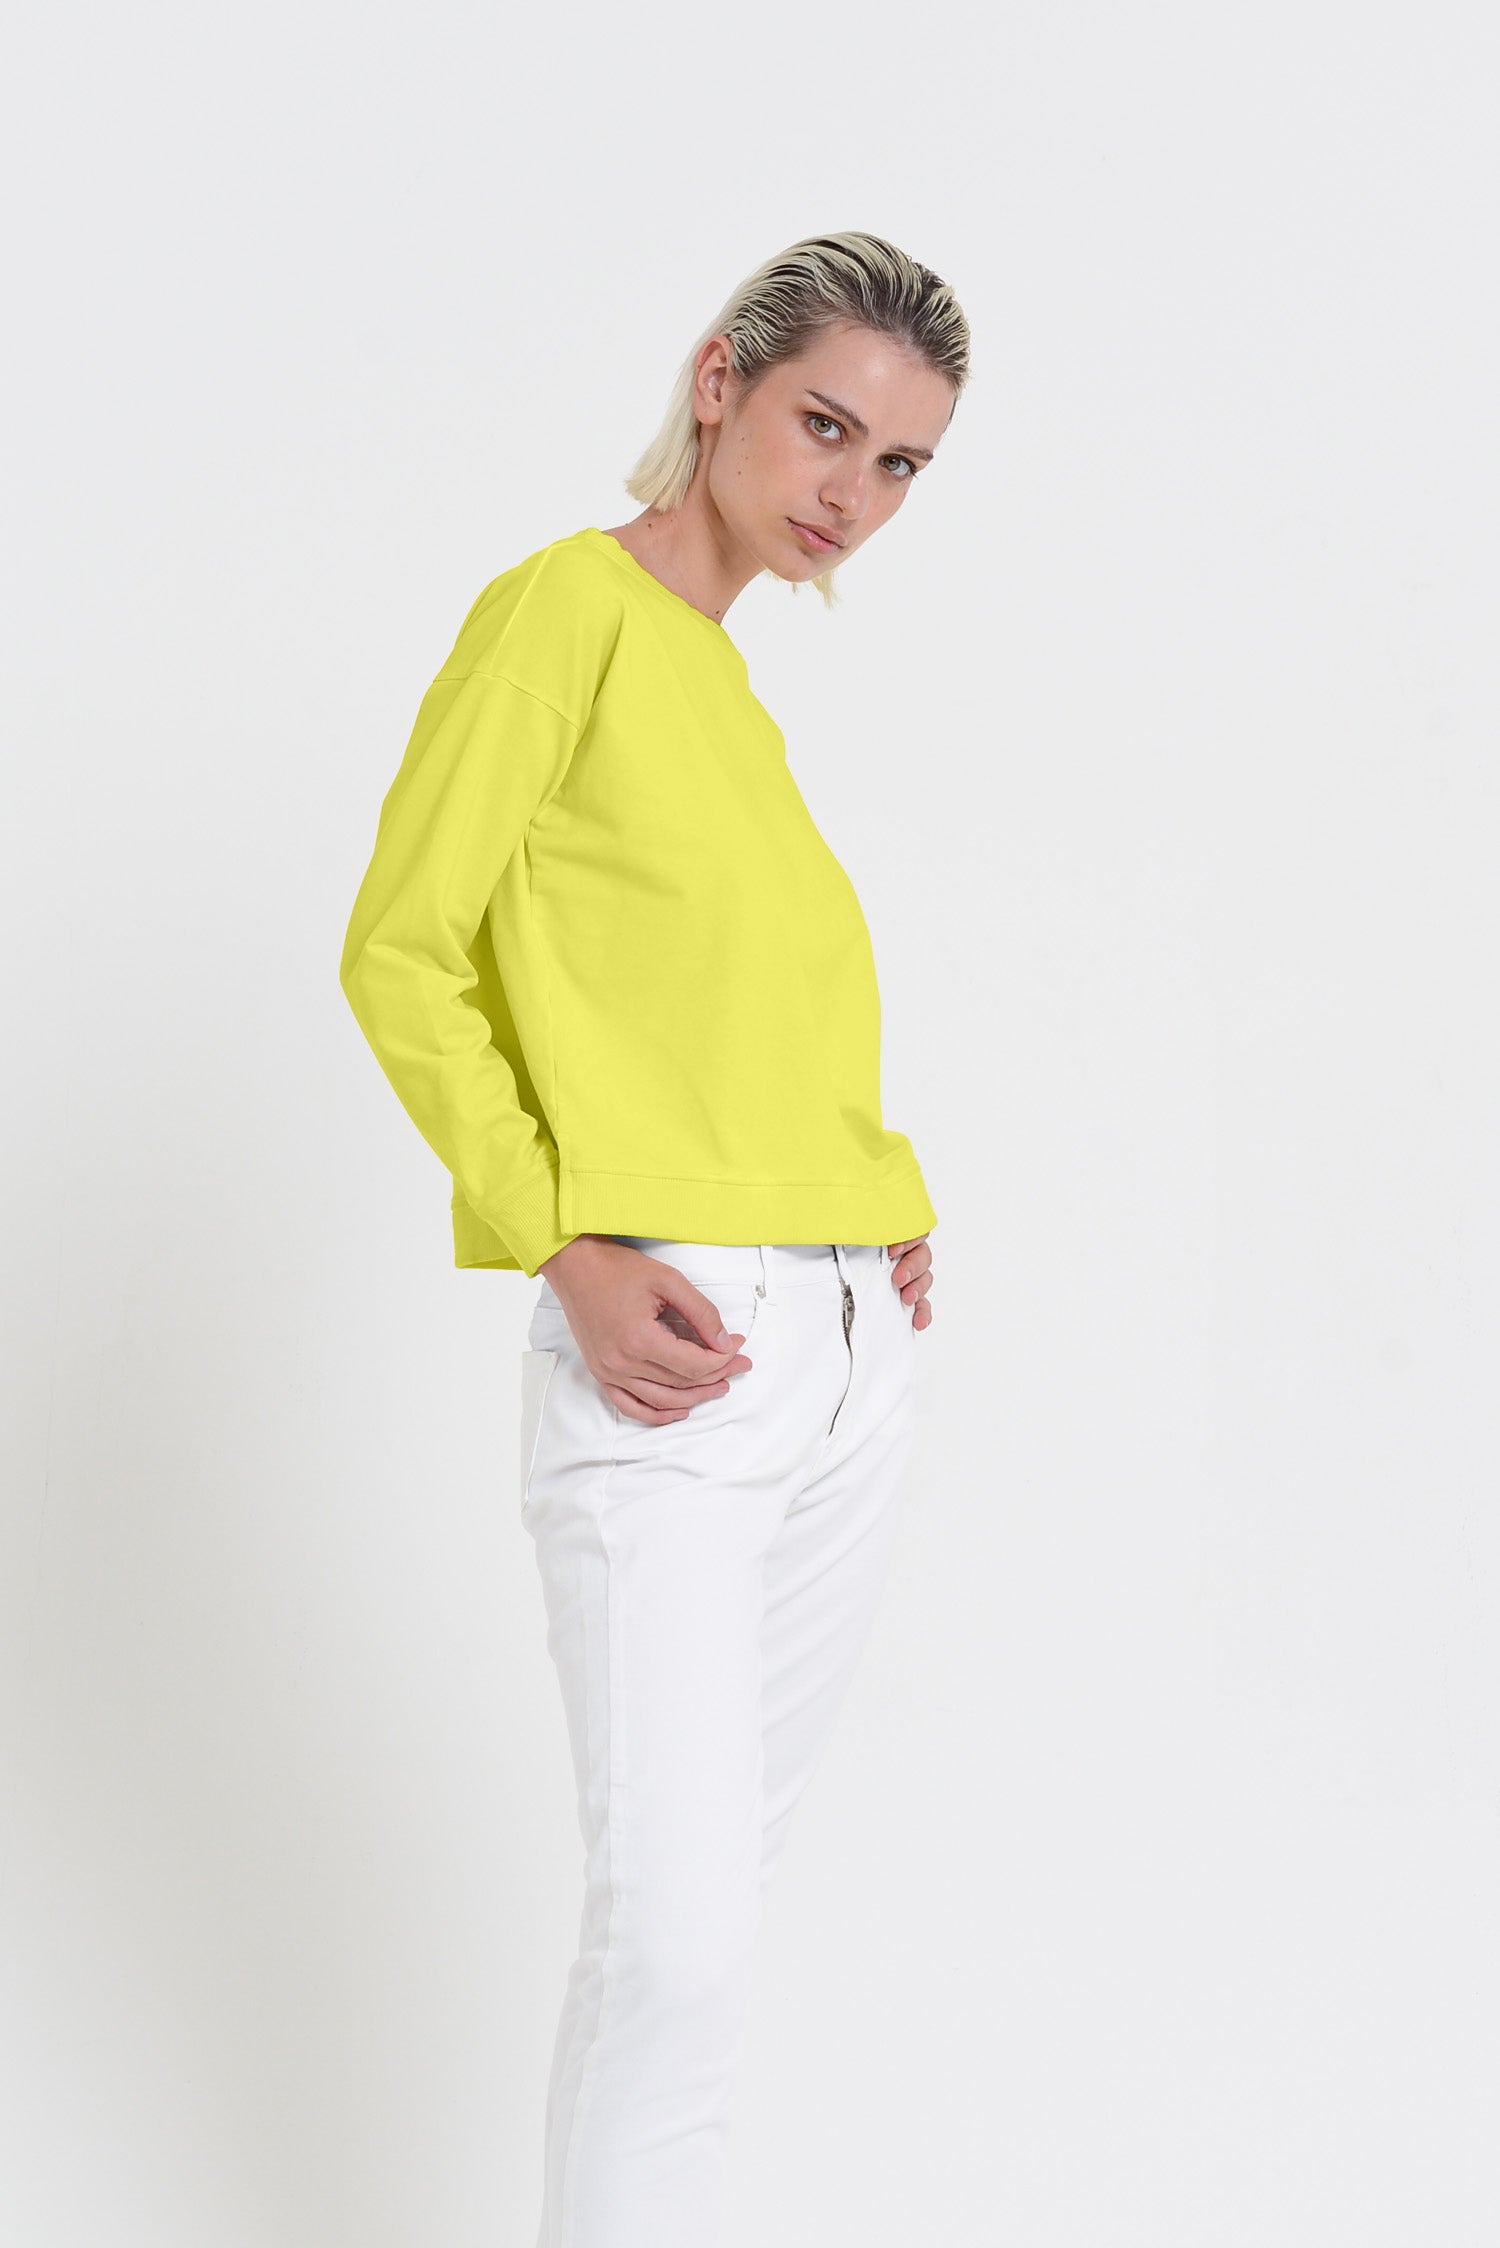 Roxie Sweatshirt - Women's Cropped Cotton Sweatshirt - Lime